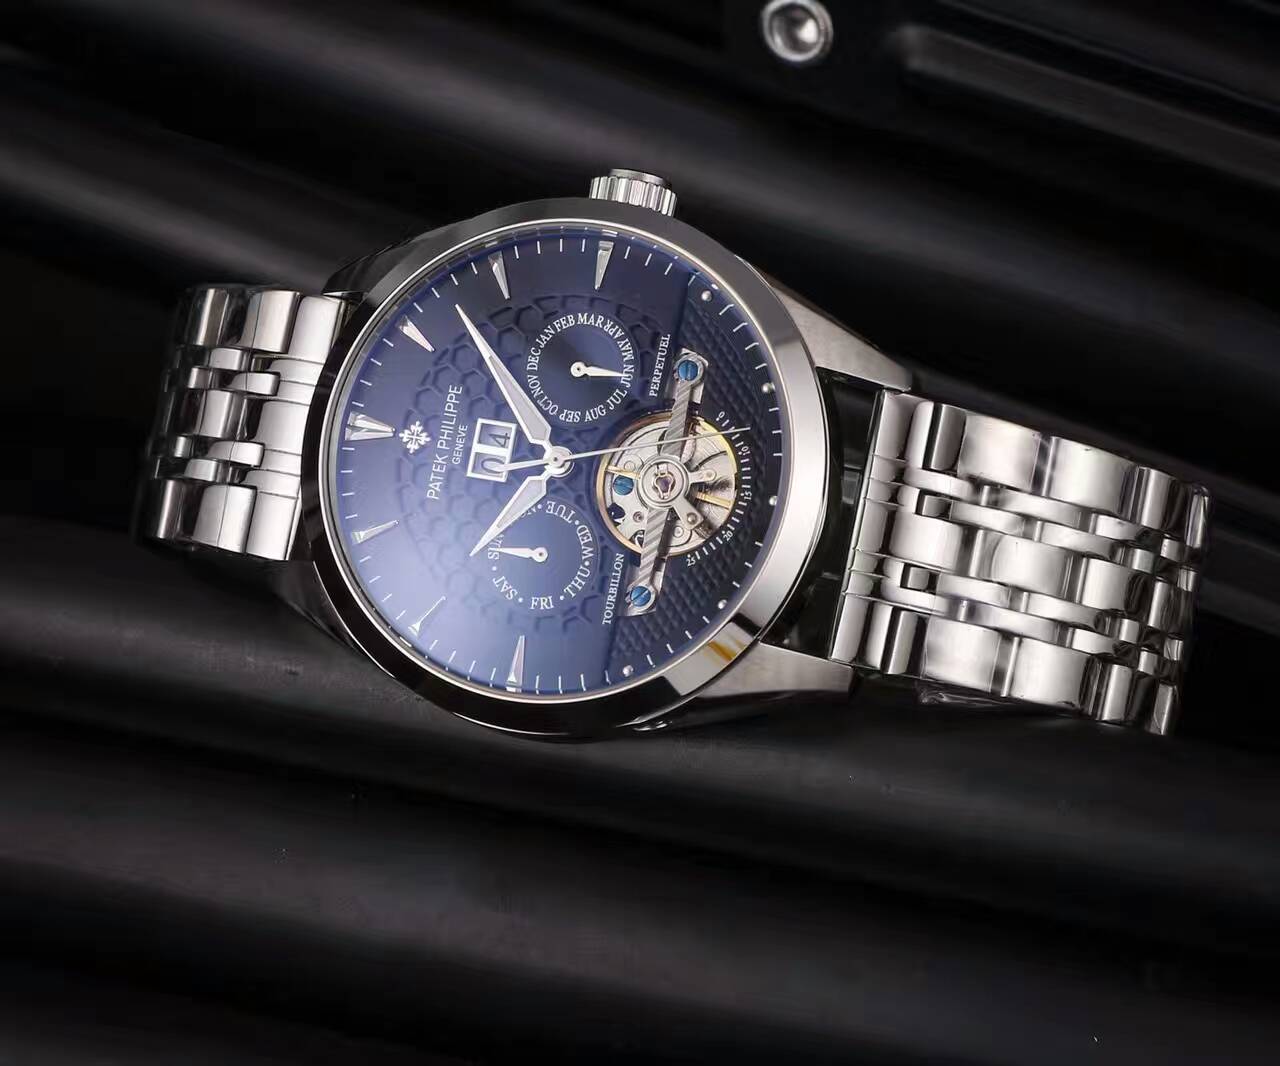 百達翡麗 西鐵城82S5機械機芯 礦物質超強鏡面 精鋼錶帶 生活防水 精品男士腕錶 -rhid-116956